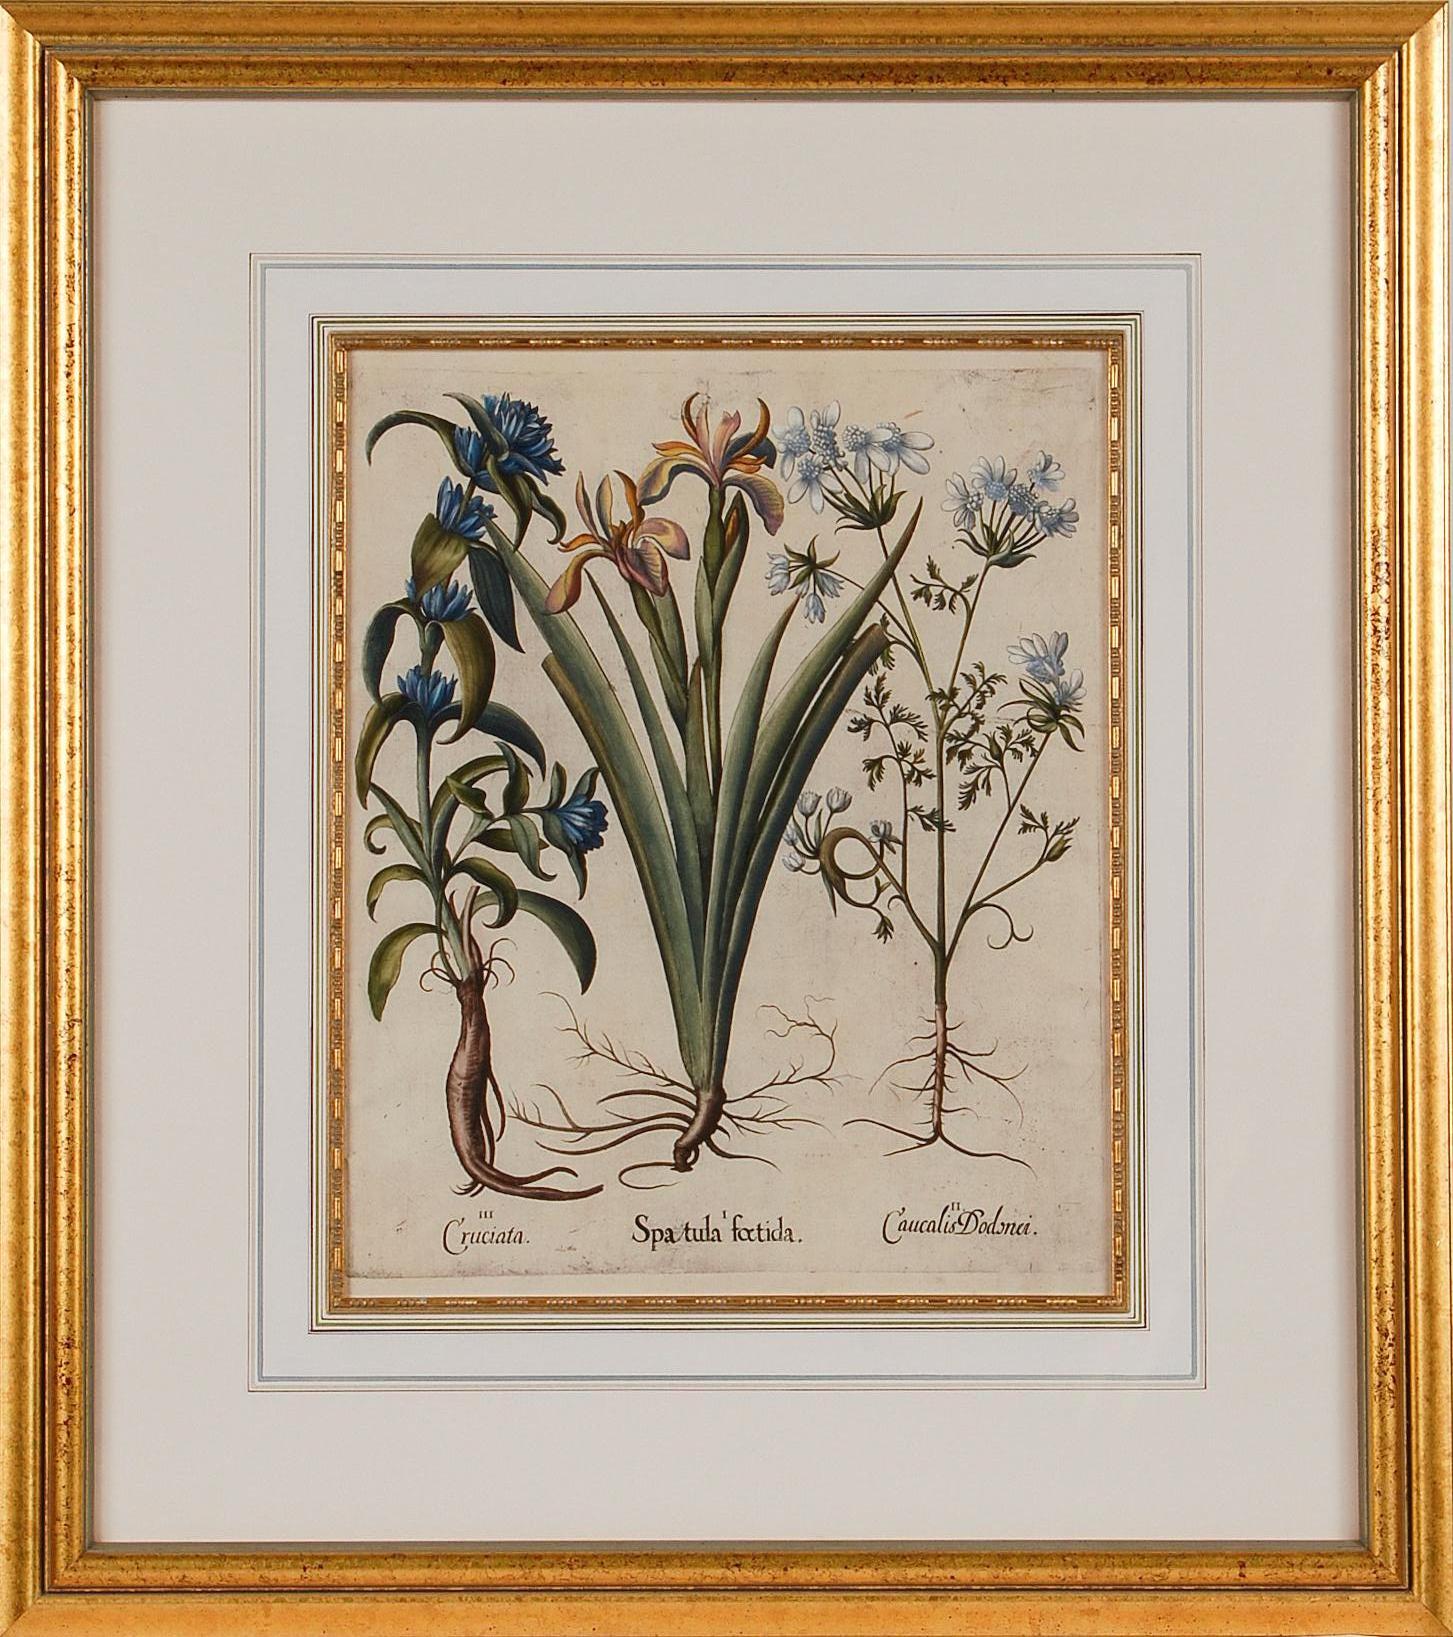 Basilius Besler Figurative Print - Flowering Iris & Other Botanicals: Framed 17th C. Besler Hand-colored Engraving